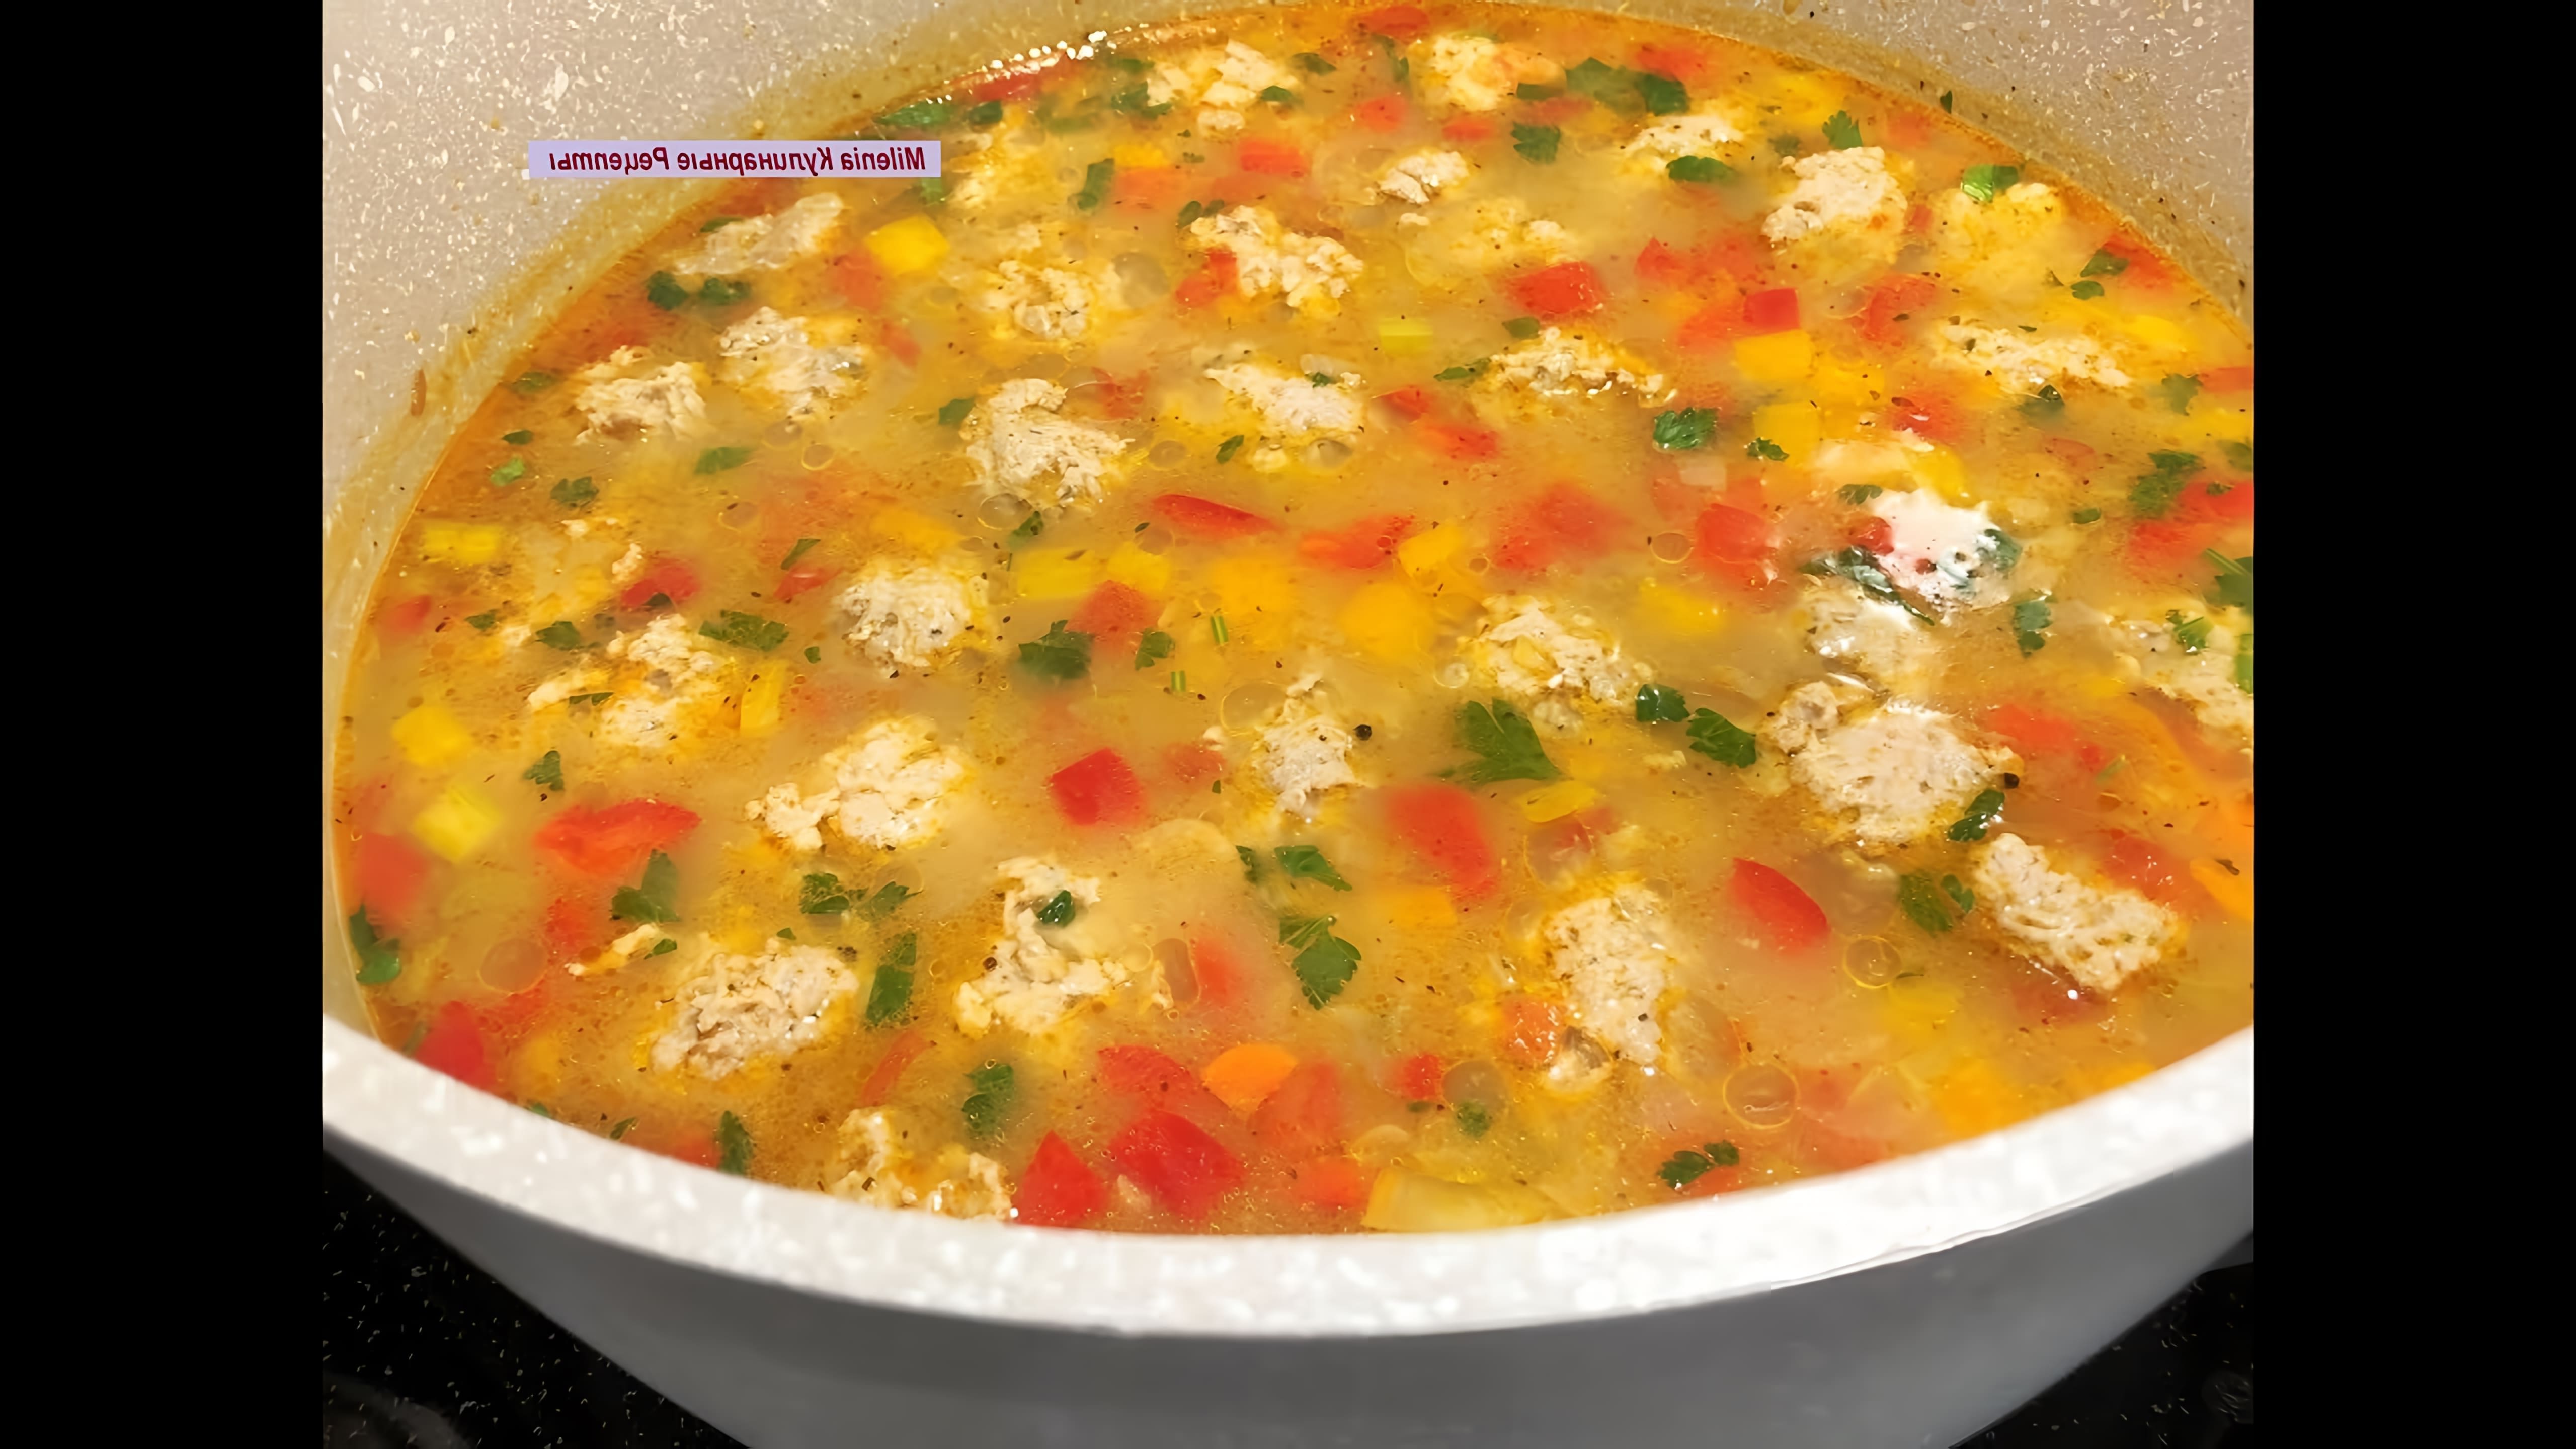 В этом видео демонстрируется процесс приготовления быстрого и вкусного супа с фрикадельками